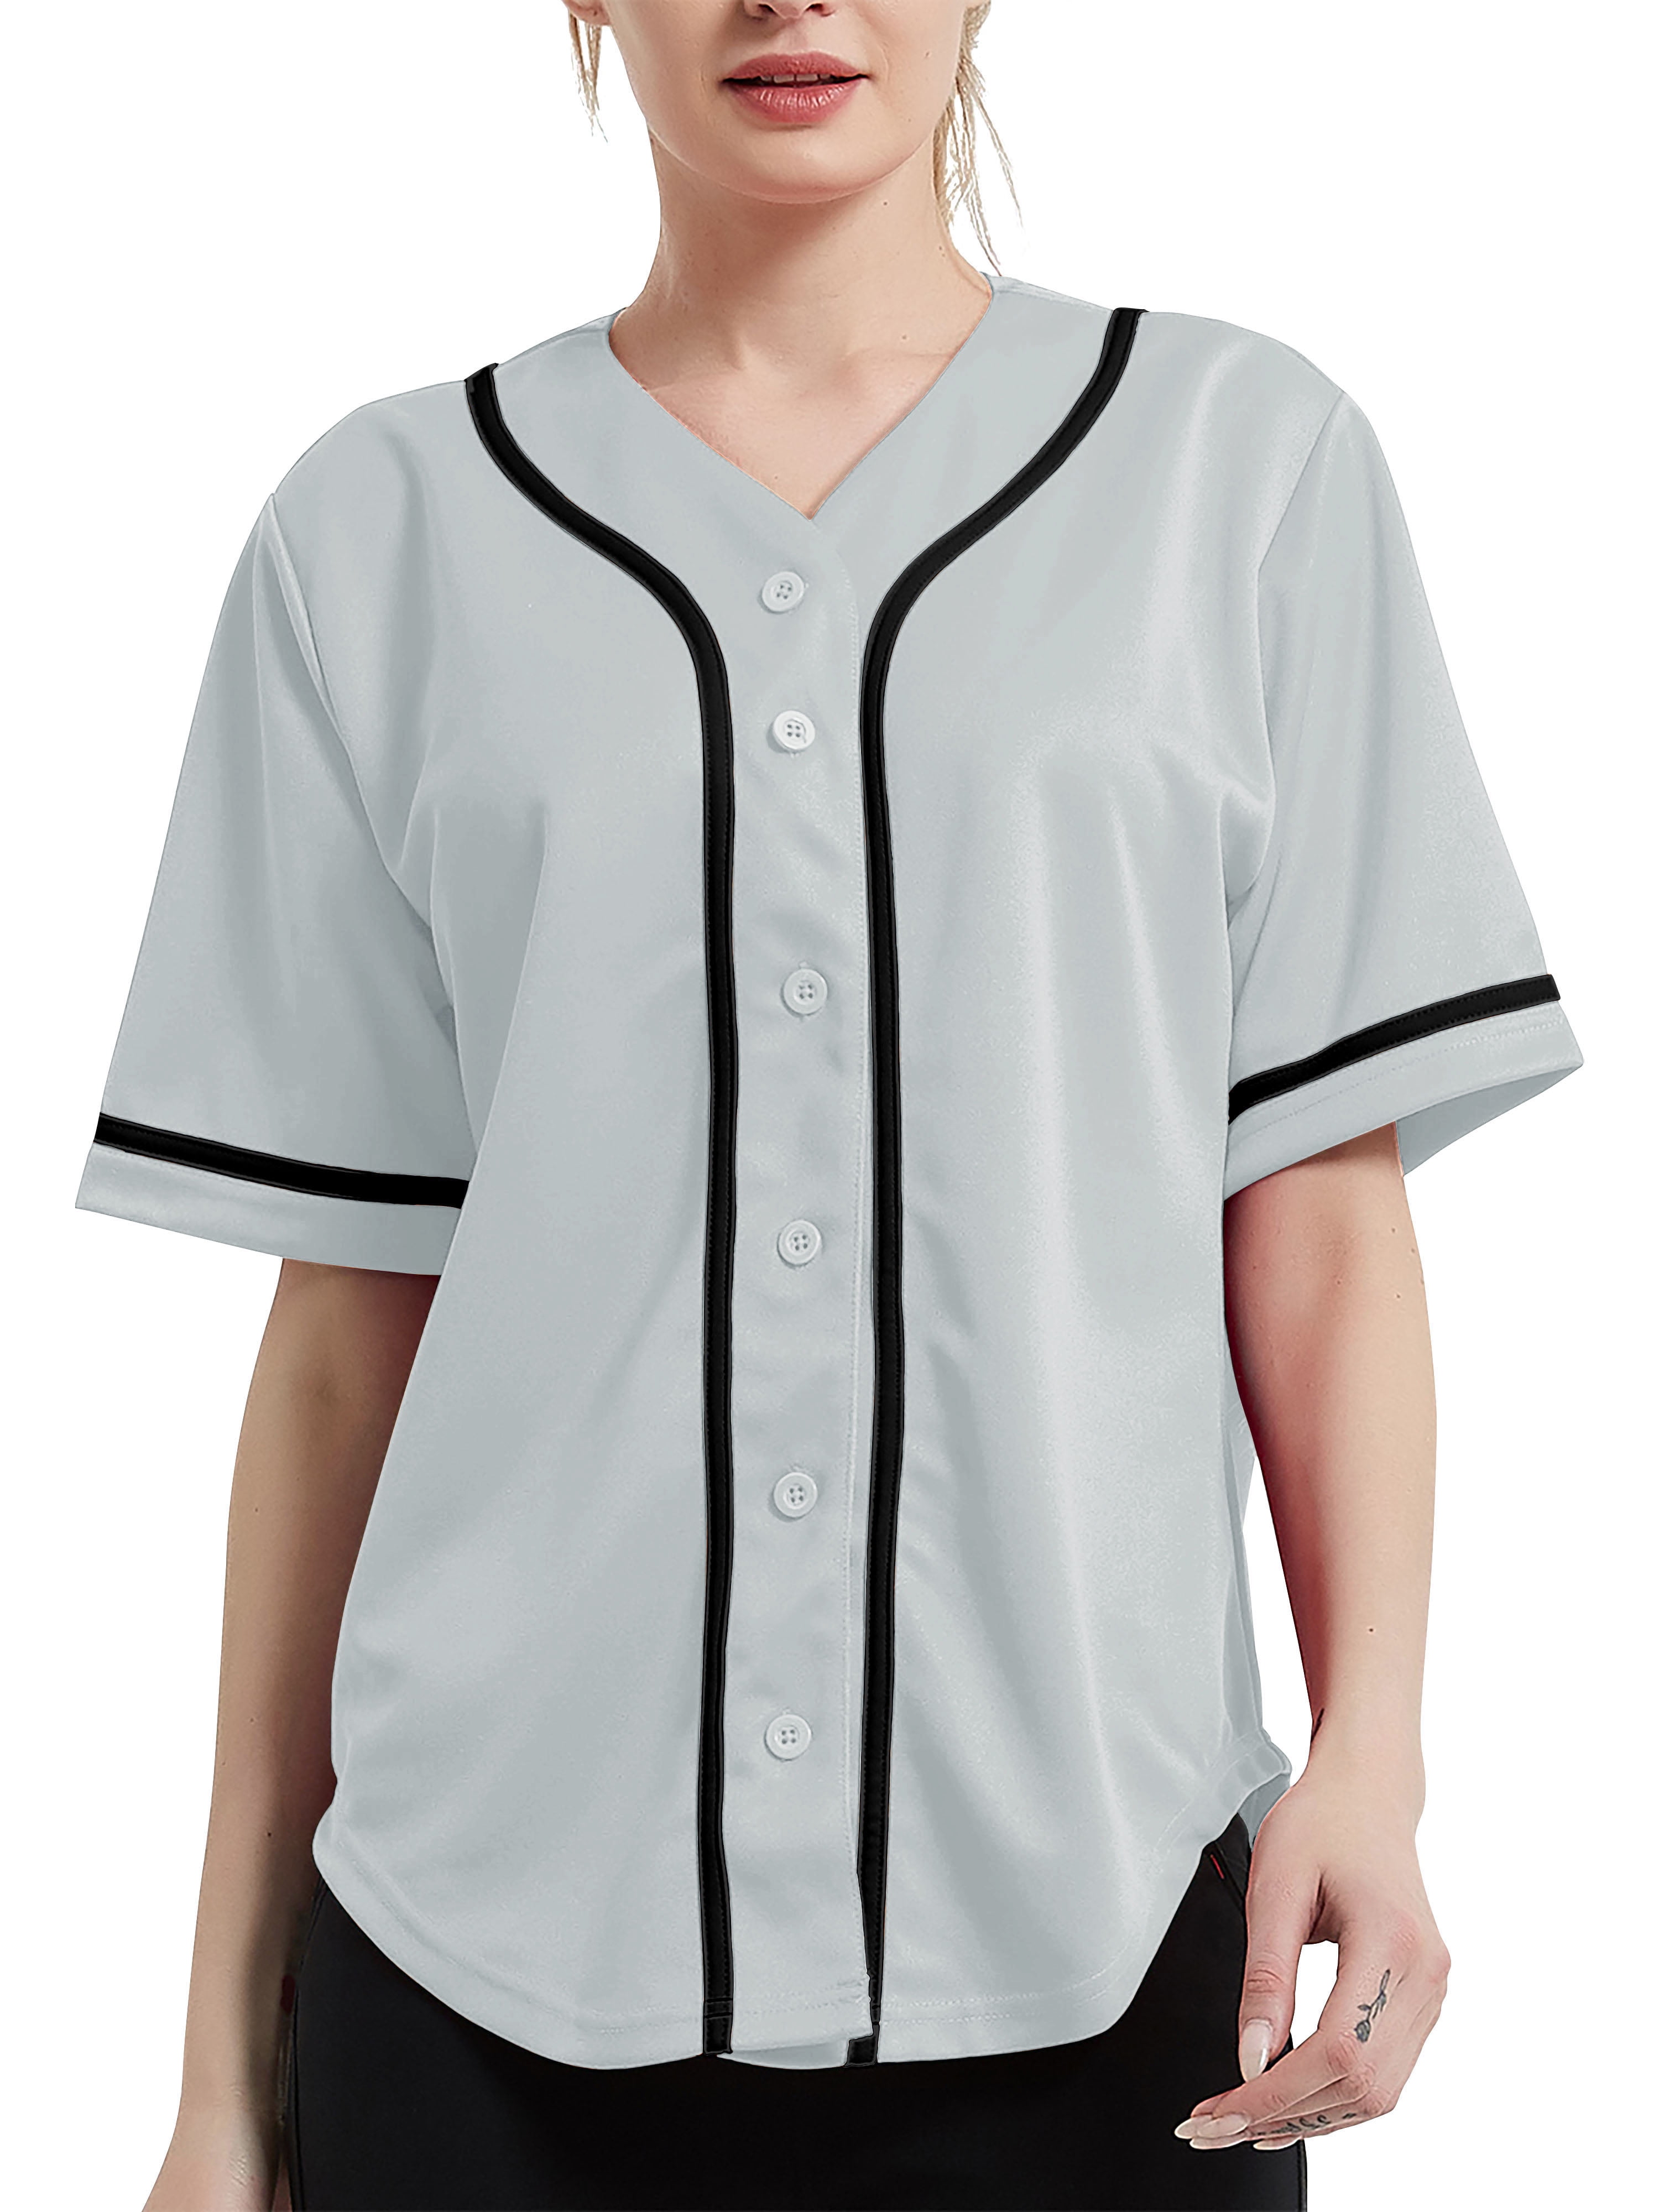 womens baseball jersey